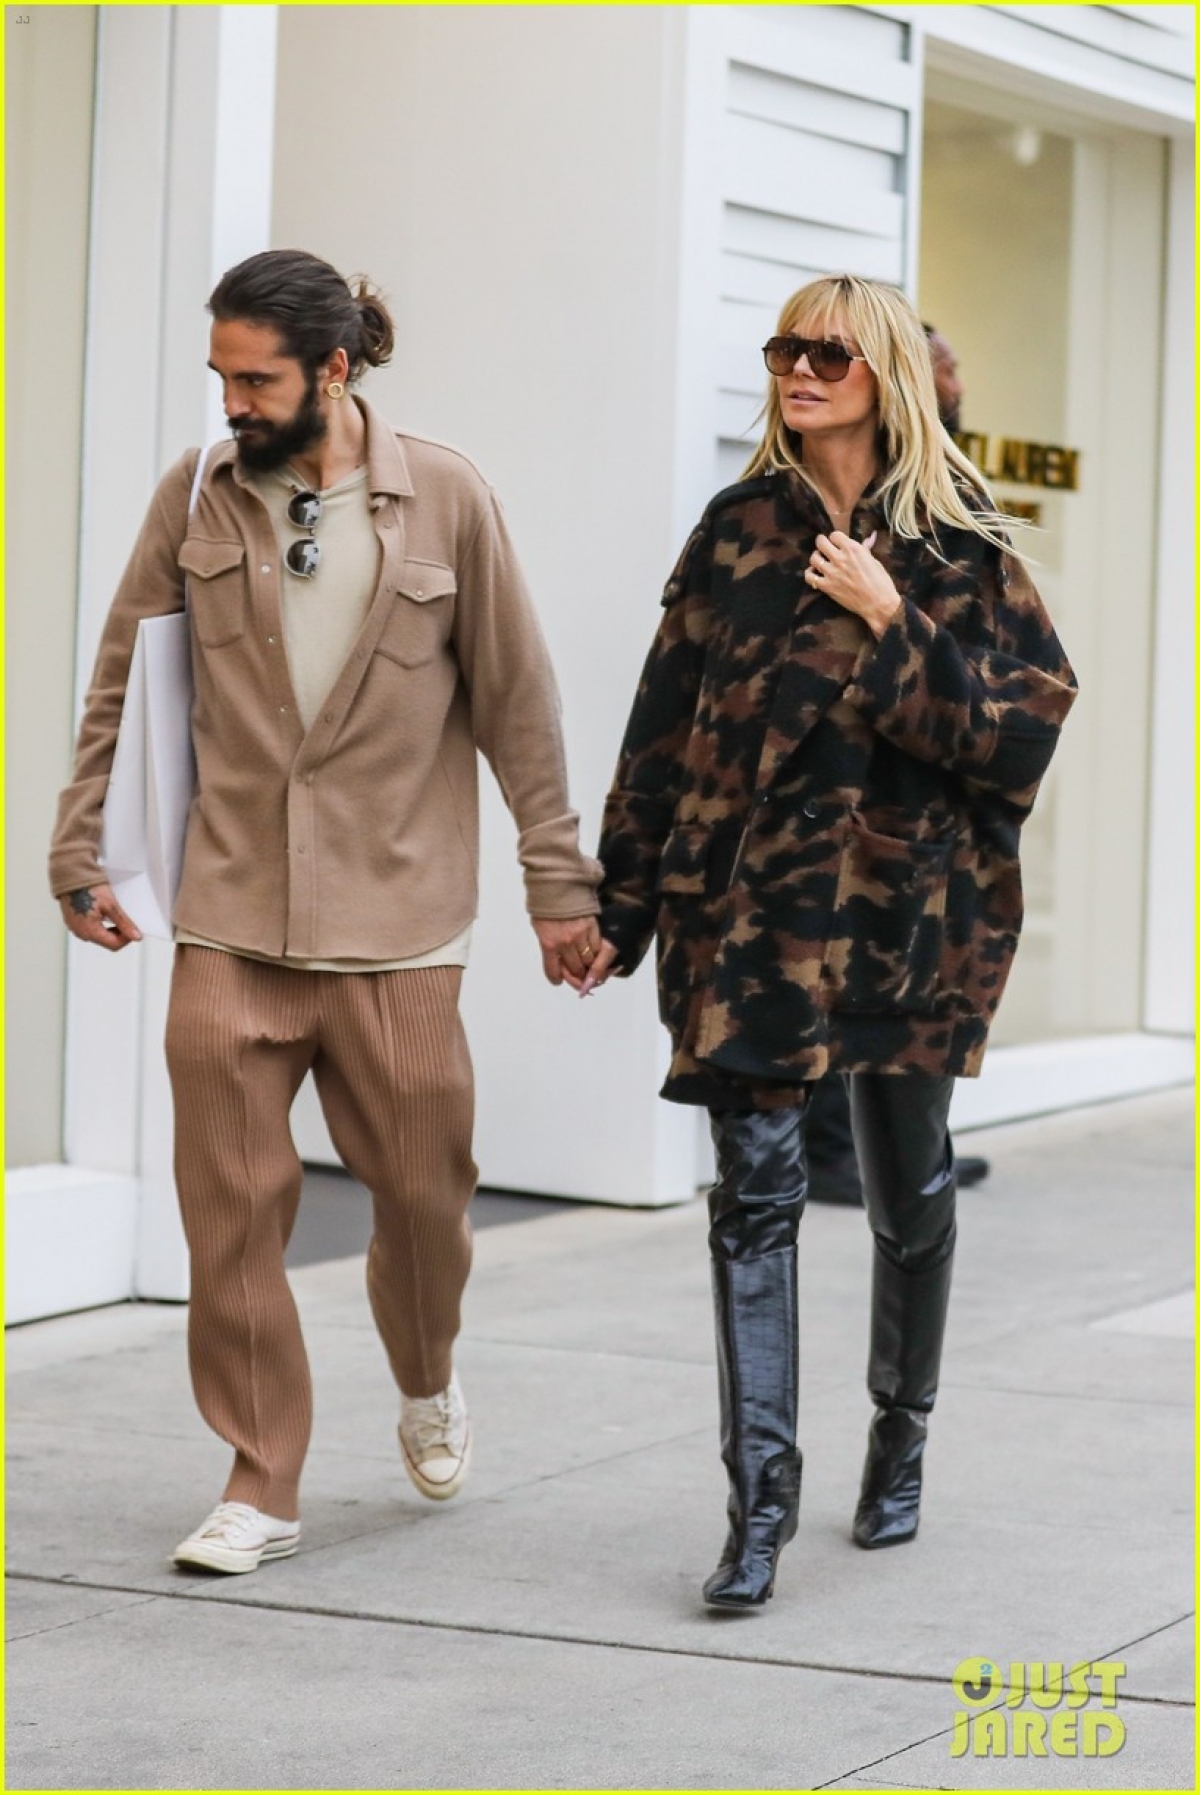 Siêu mẫu Heidi Klum diện đồ sành điệu, tình cảm nắm tay chồng trẻ đi mua sắm - Ảnh 2.